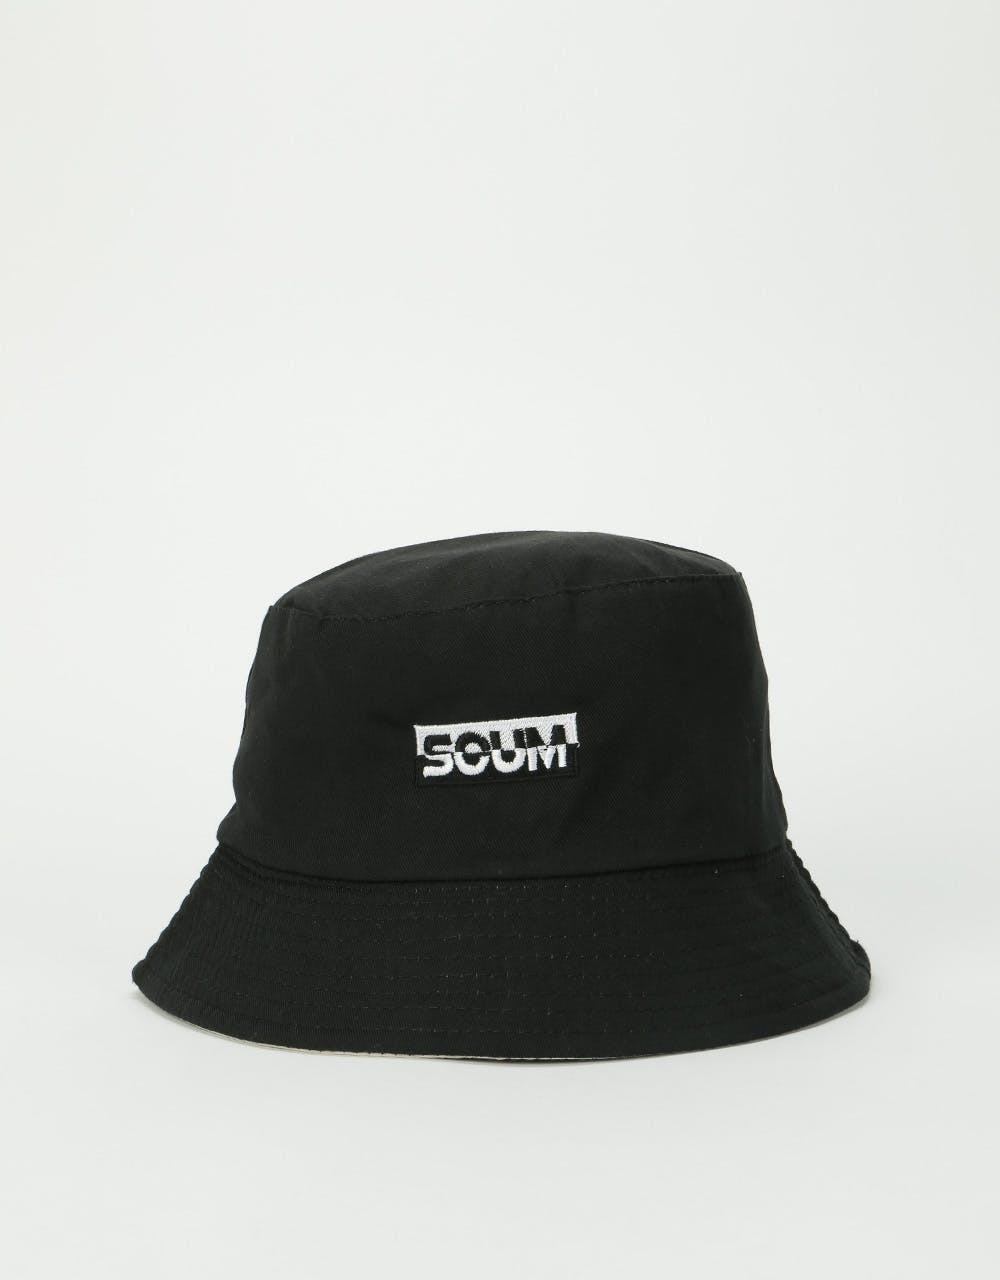 Scum Logo Bucket Hat - Black